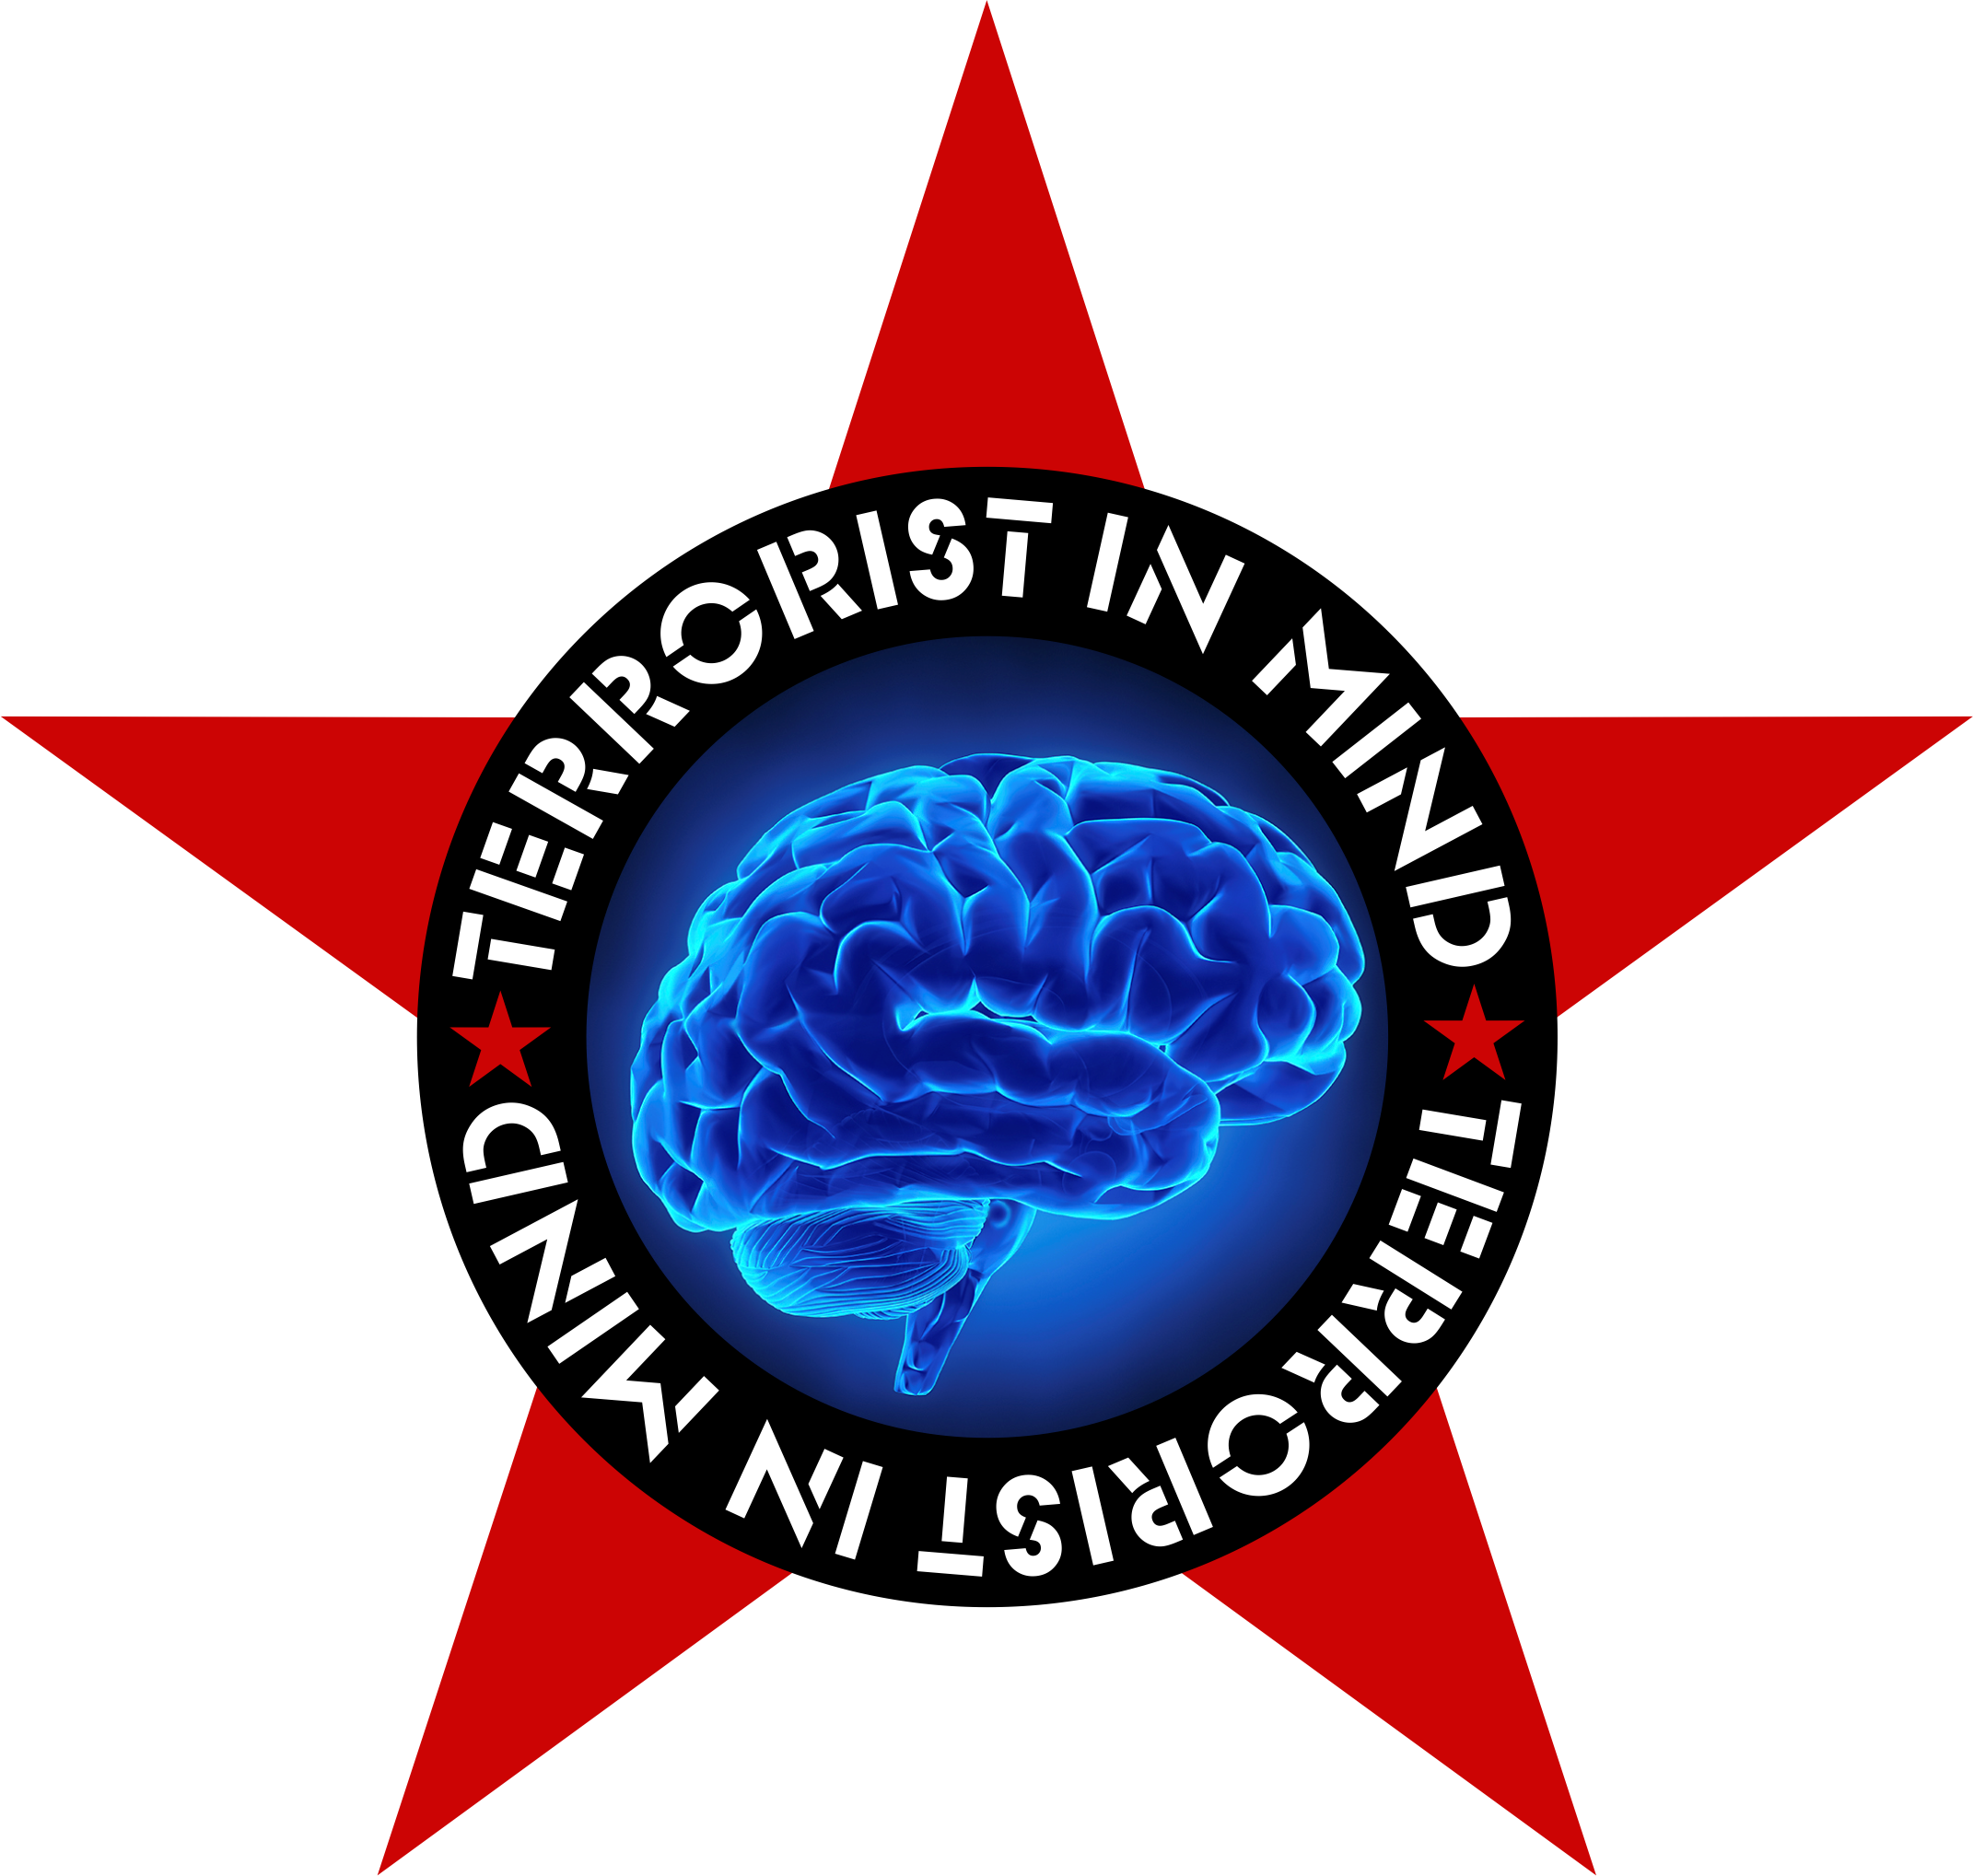 Rundes Logo von Terrorist in Mind. Es ist ein roter Stern zu sehen, mit einem schwarzen Kreis darüber in dem Terrorist in Mind steht. In der Mitte des Kreises sieht man ein blau leuchtendes Gehirn